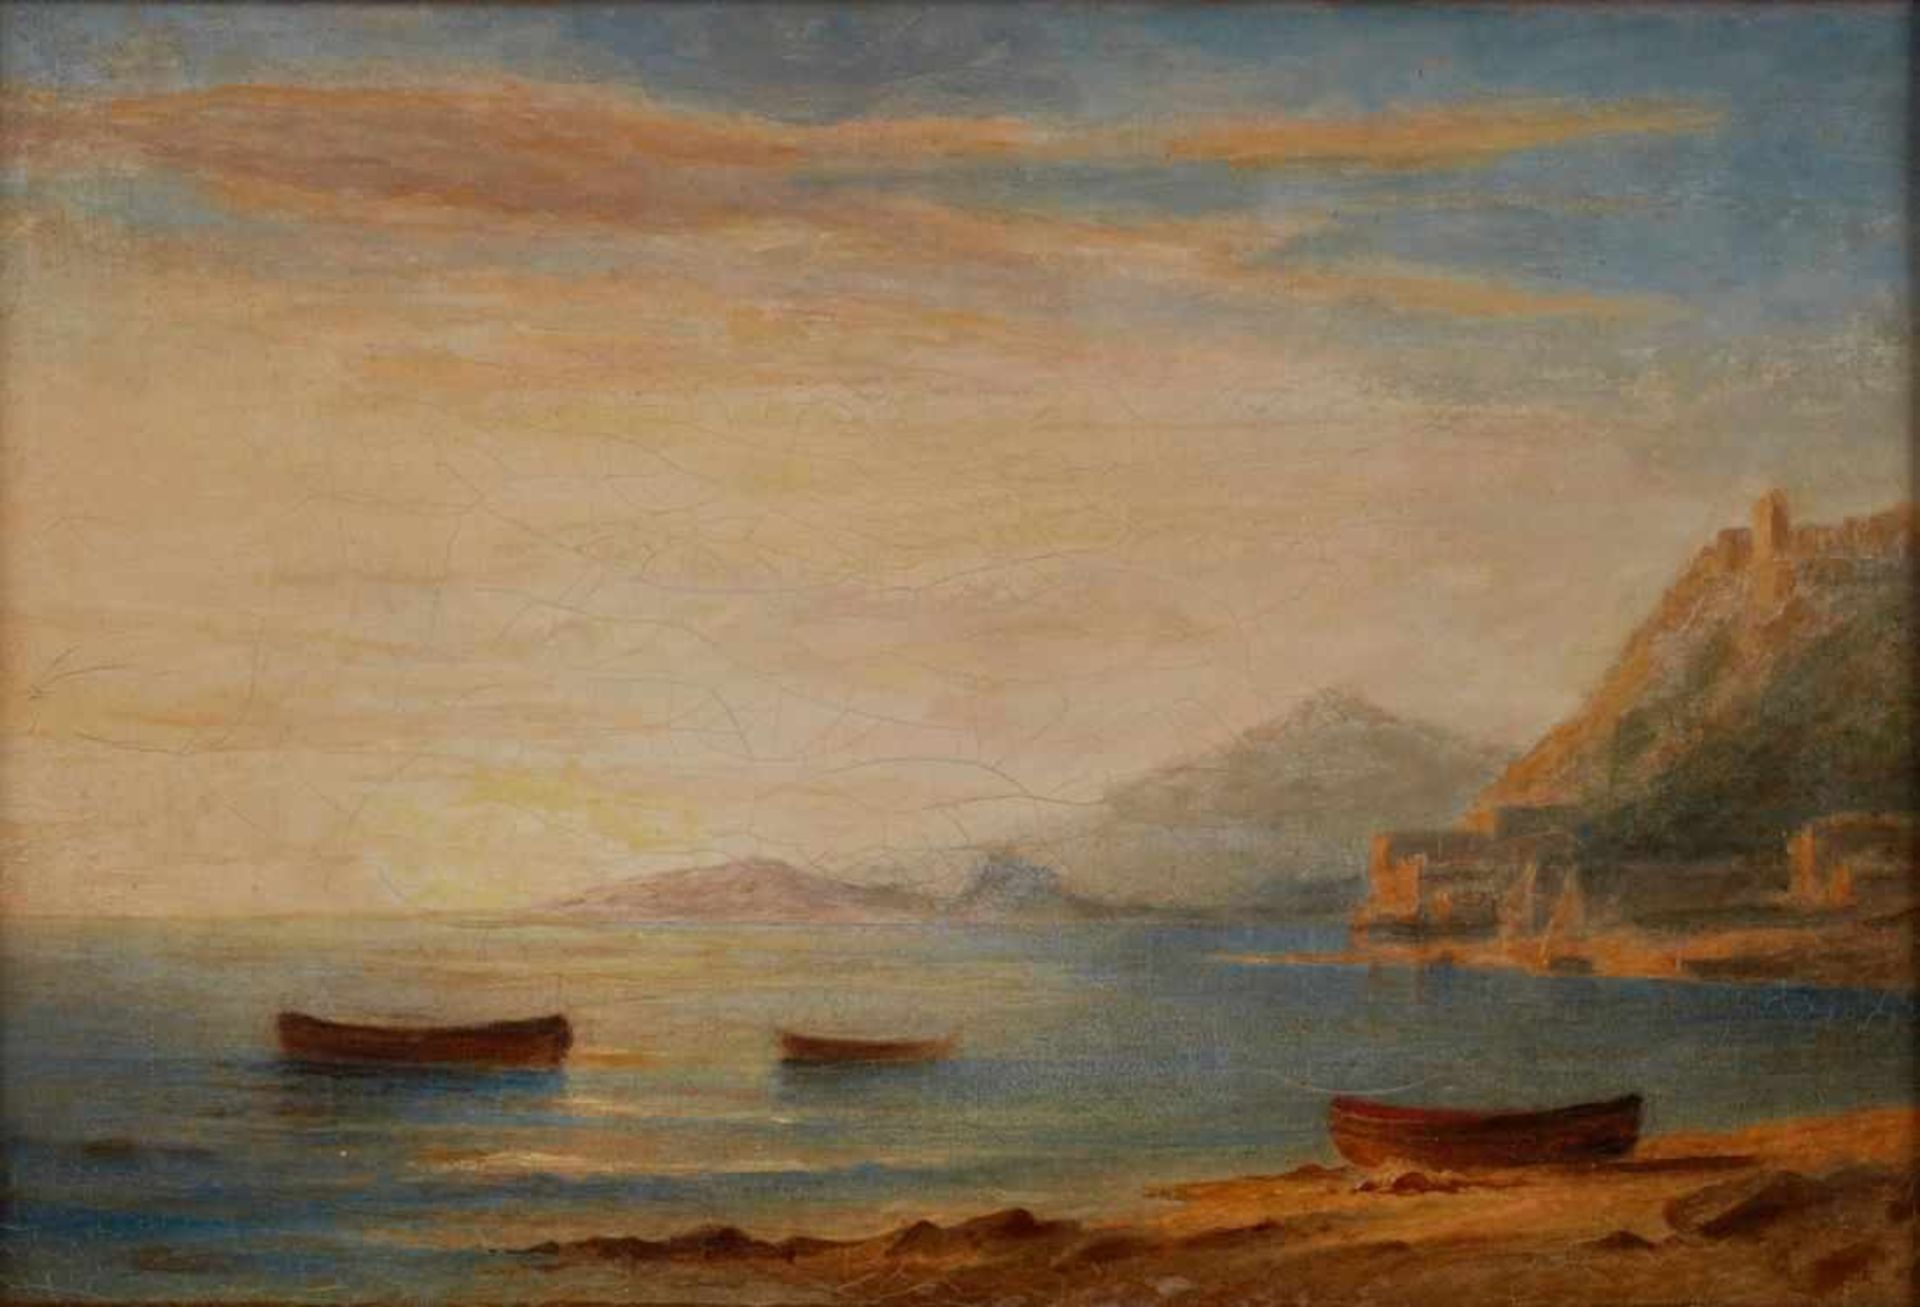 Gemälde/Ölstudie Carl Morgenstern 1811 Frannkfurt - 1893 Frankfurt "Italienische Küstenszene"